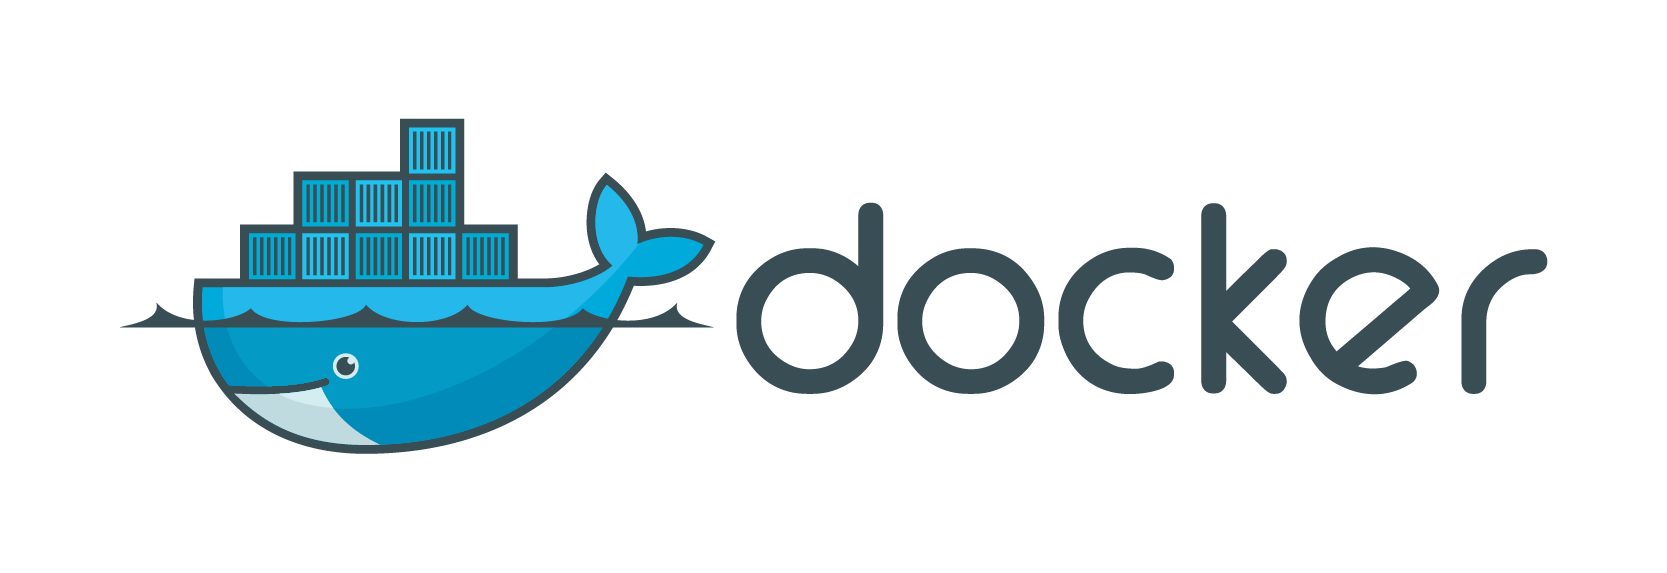 The docker logo